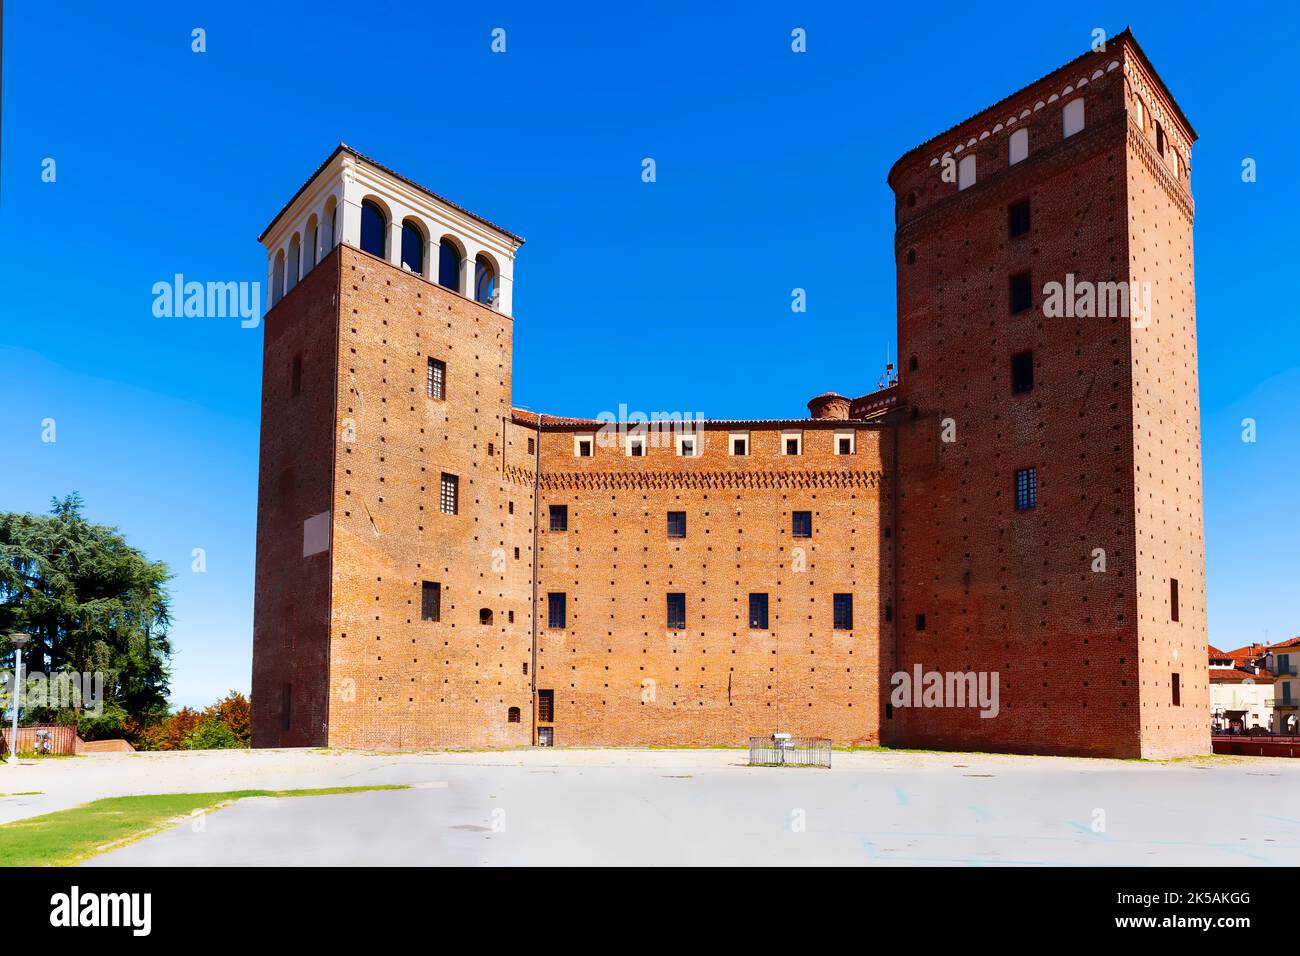 Castello di Fossano o Castello dei principi di Acaja, provincia di Cuneo, Piemonte. Regione dell'Italia nord-occidentale situata ai piedi delle Alpi. Foto Stock